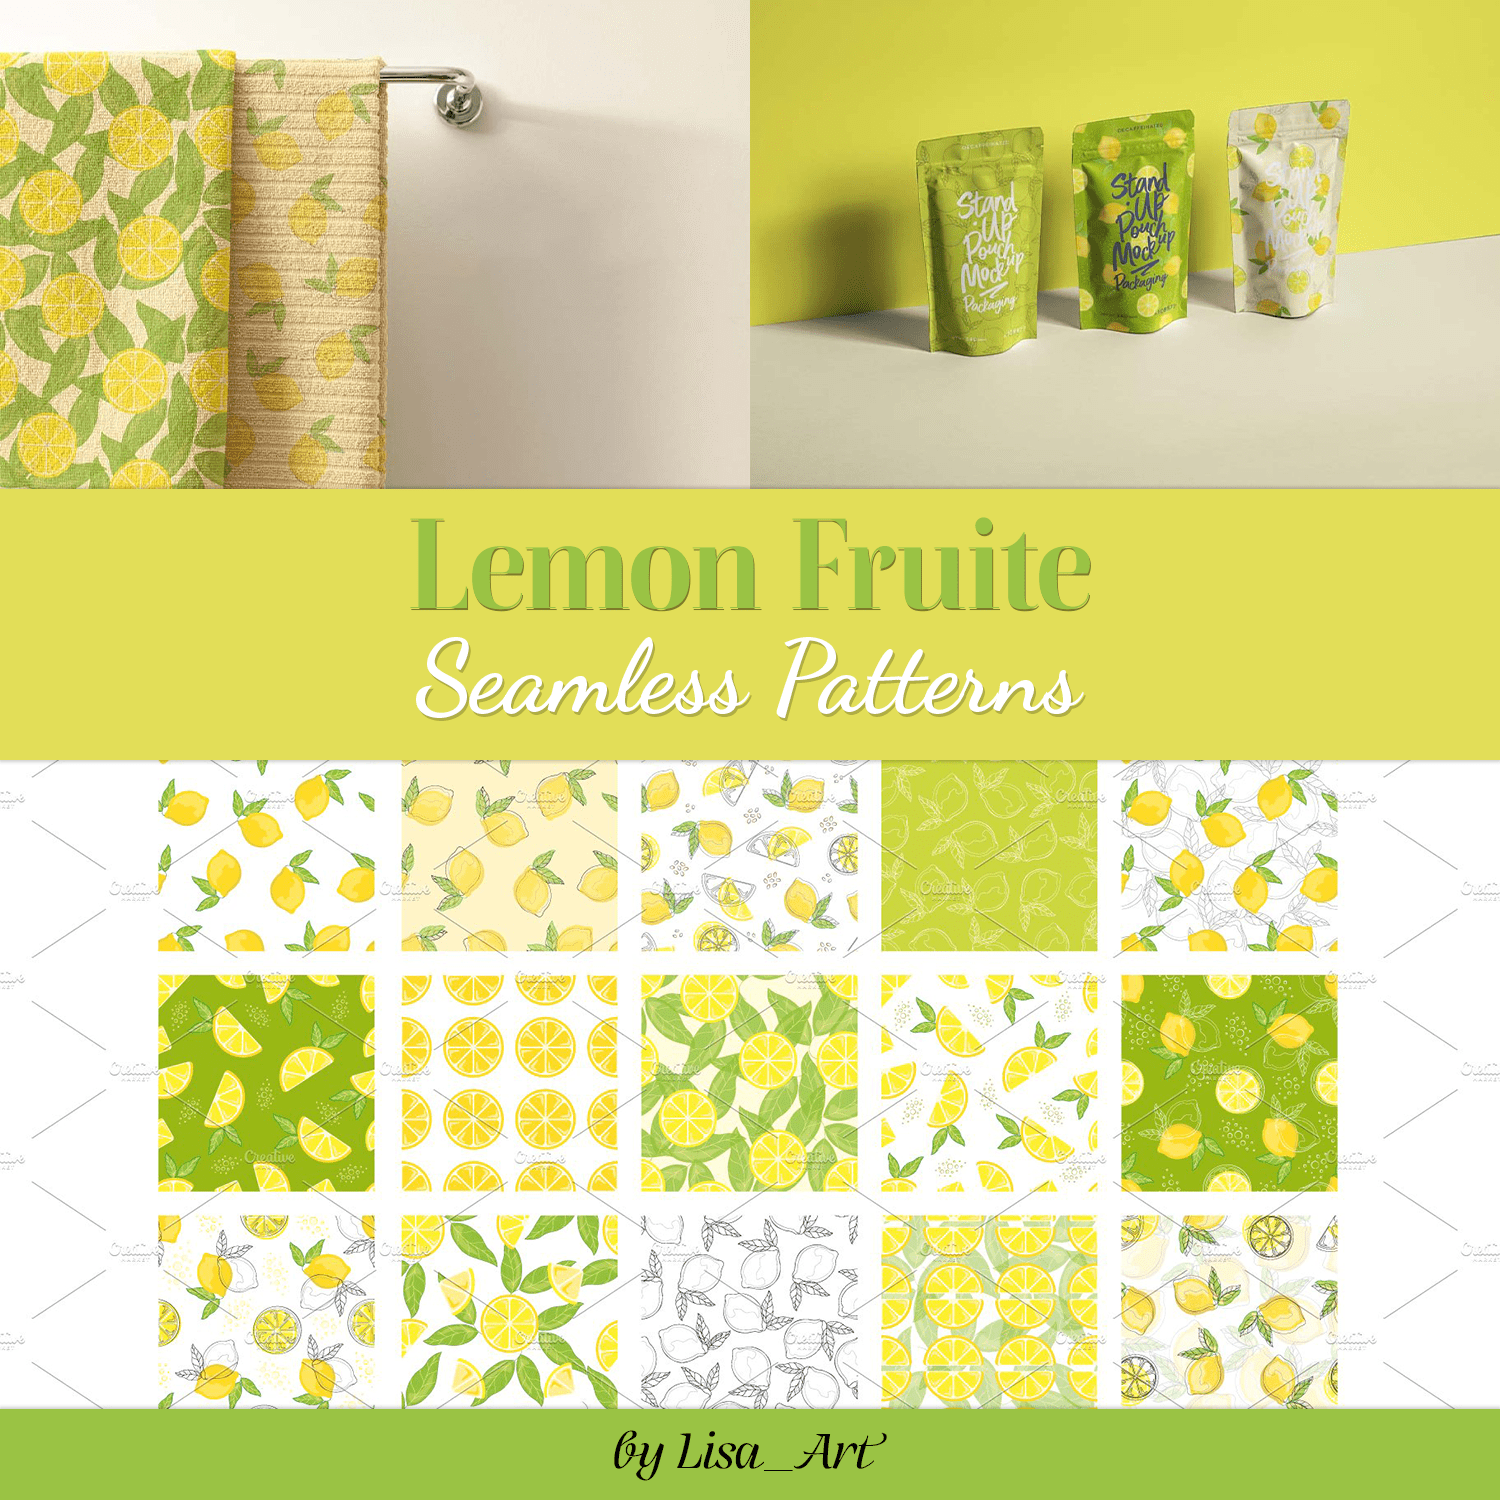 Lemon Fruite Seamless Patterns.